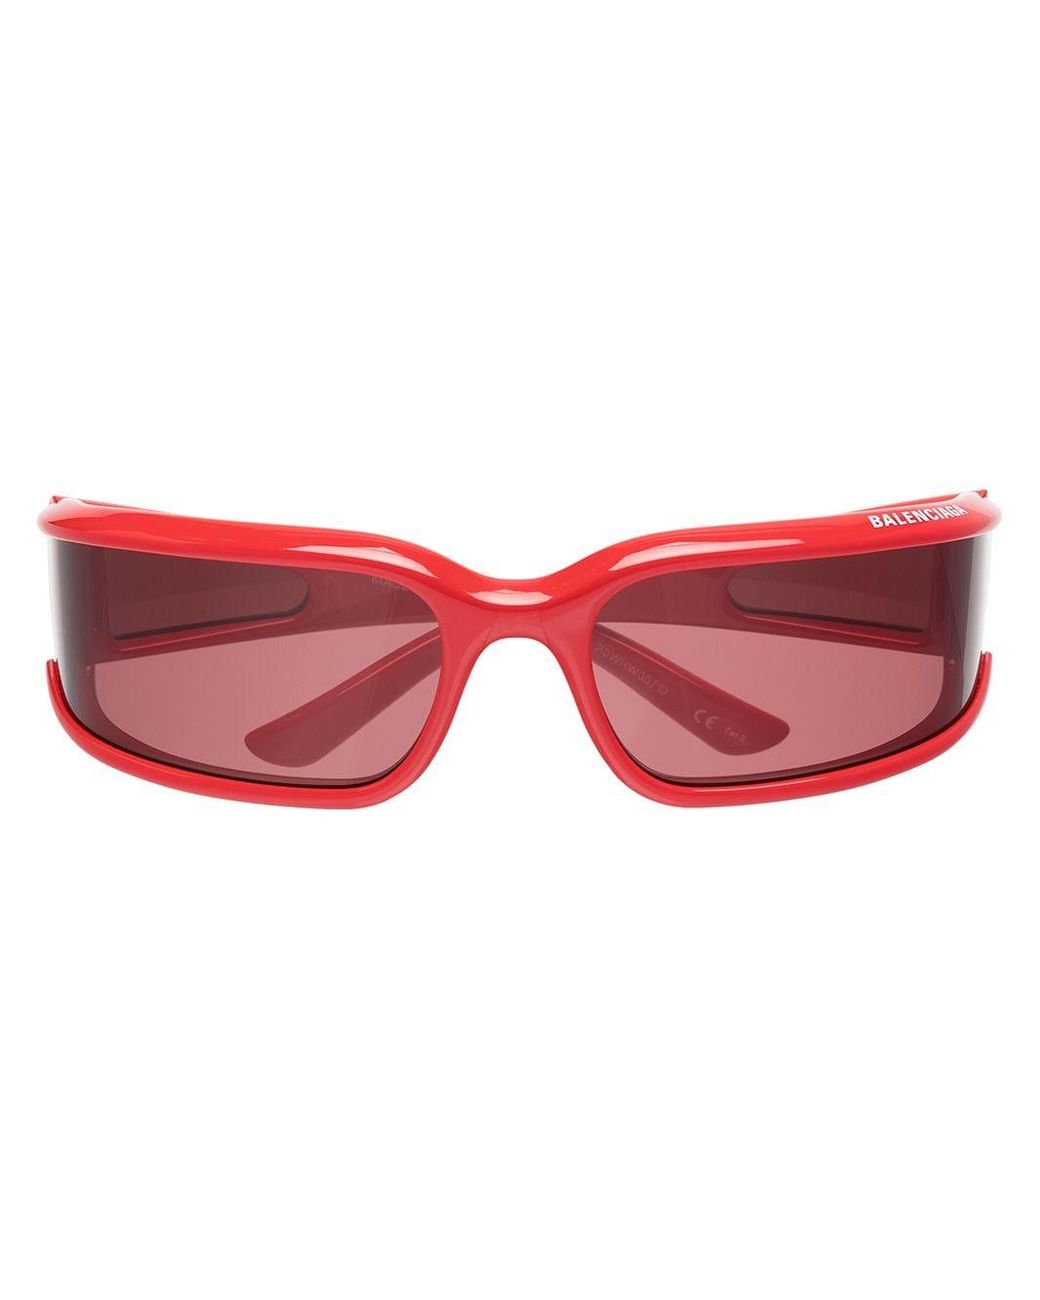 Balenciaga Wraparound Sunglasses in Red | Lyst